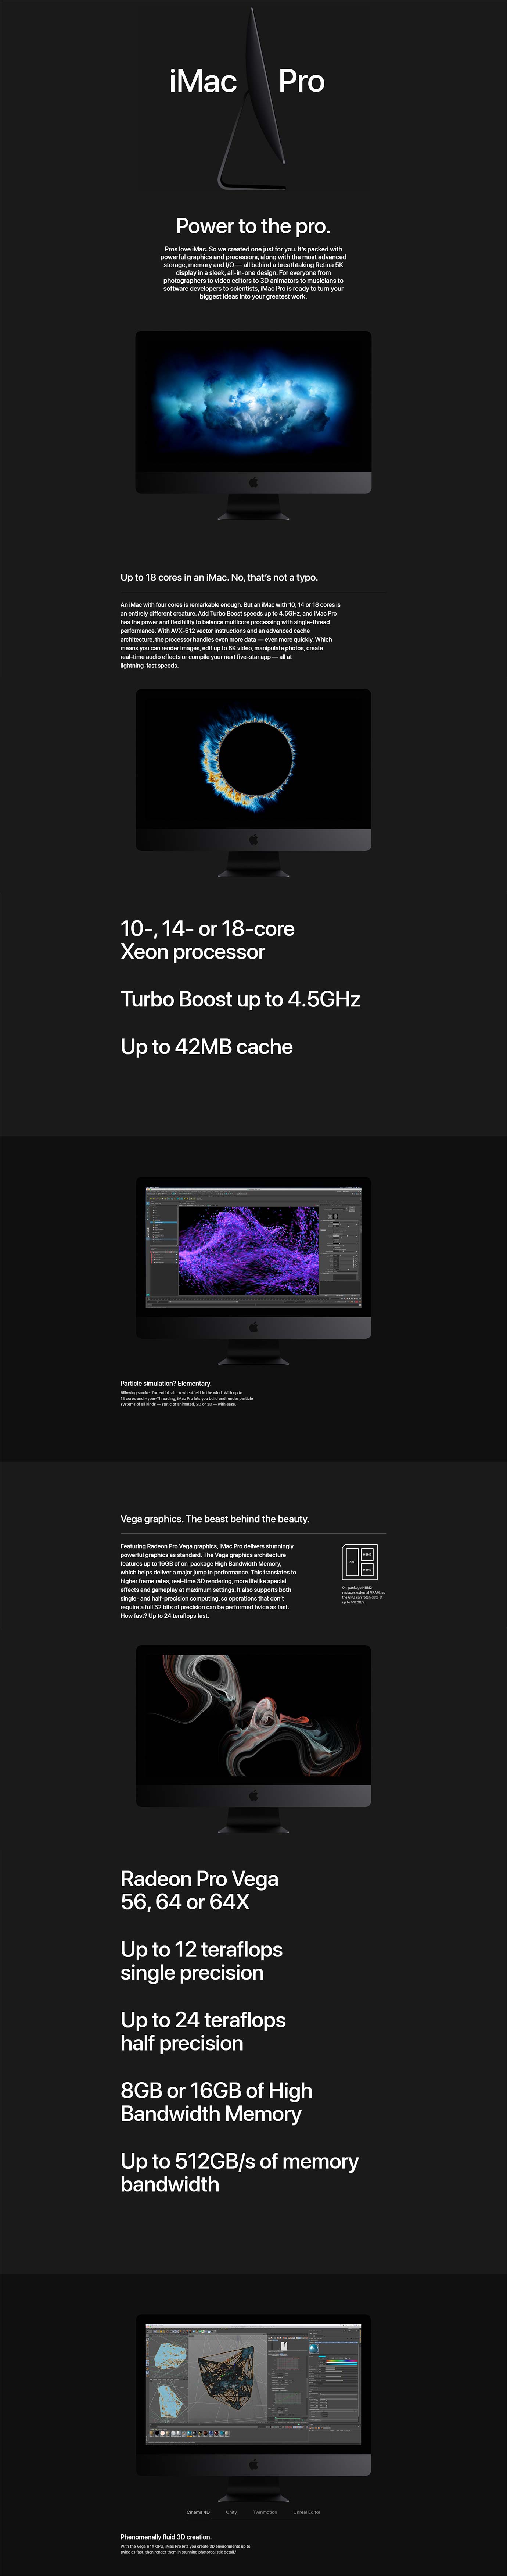 27in iMac Pro